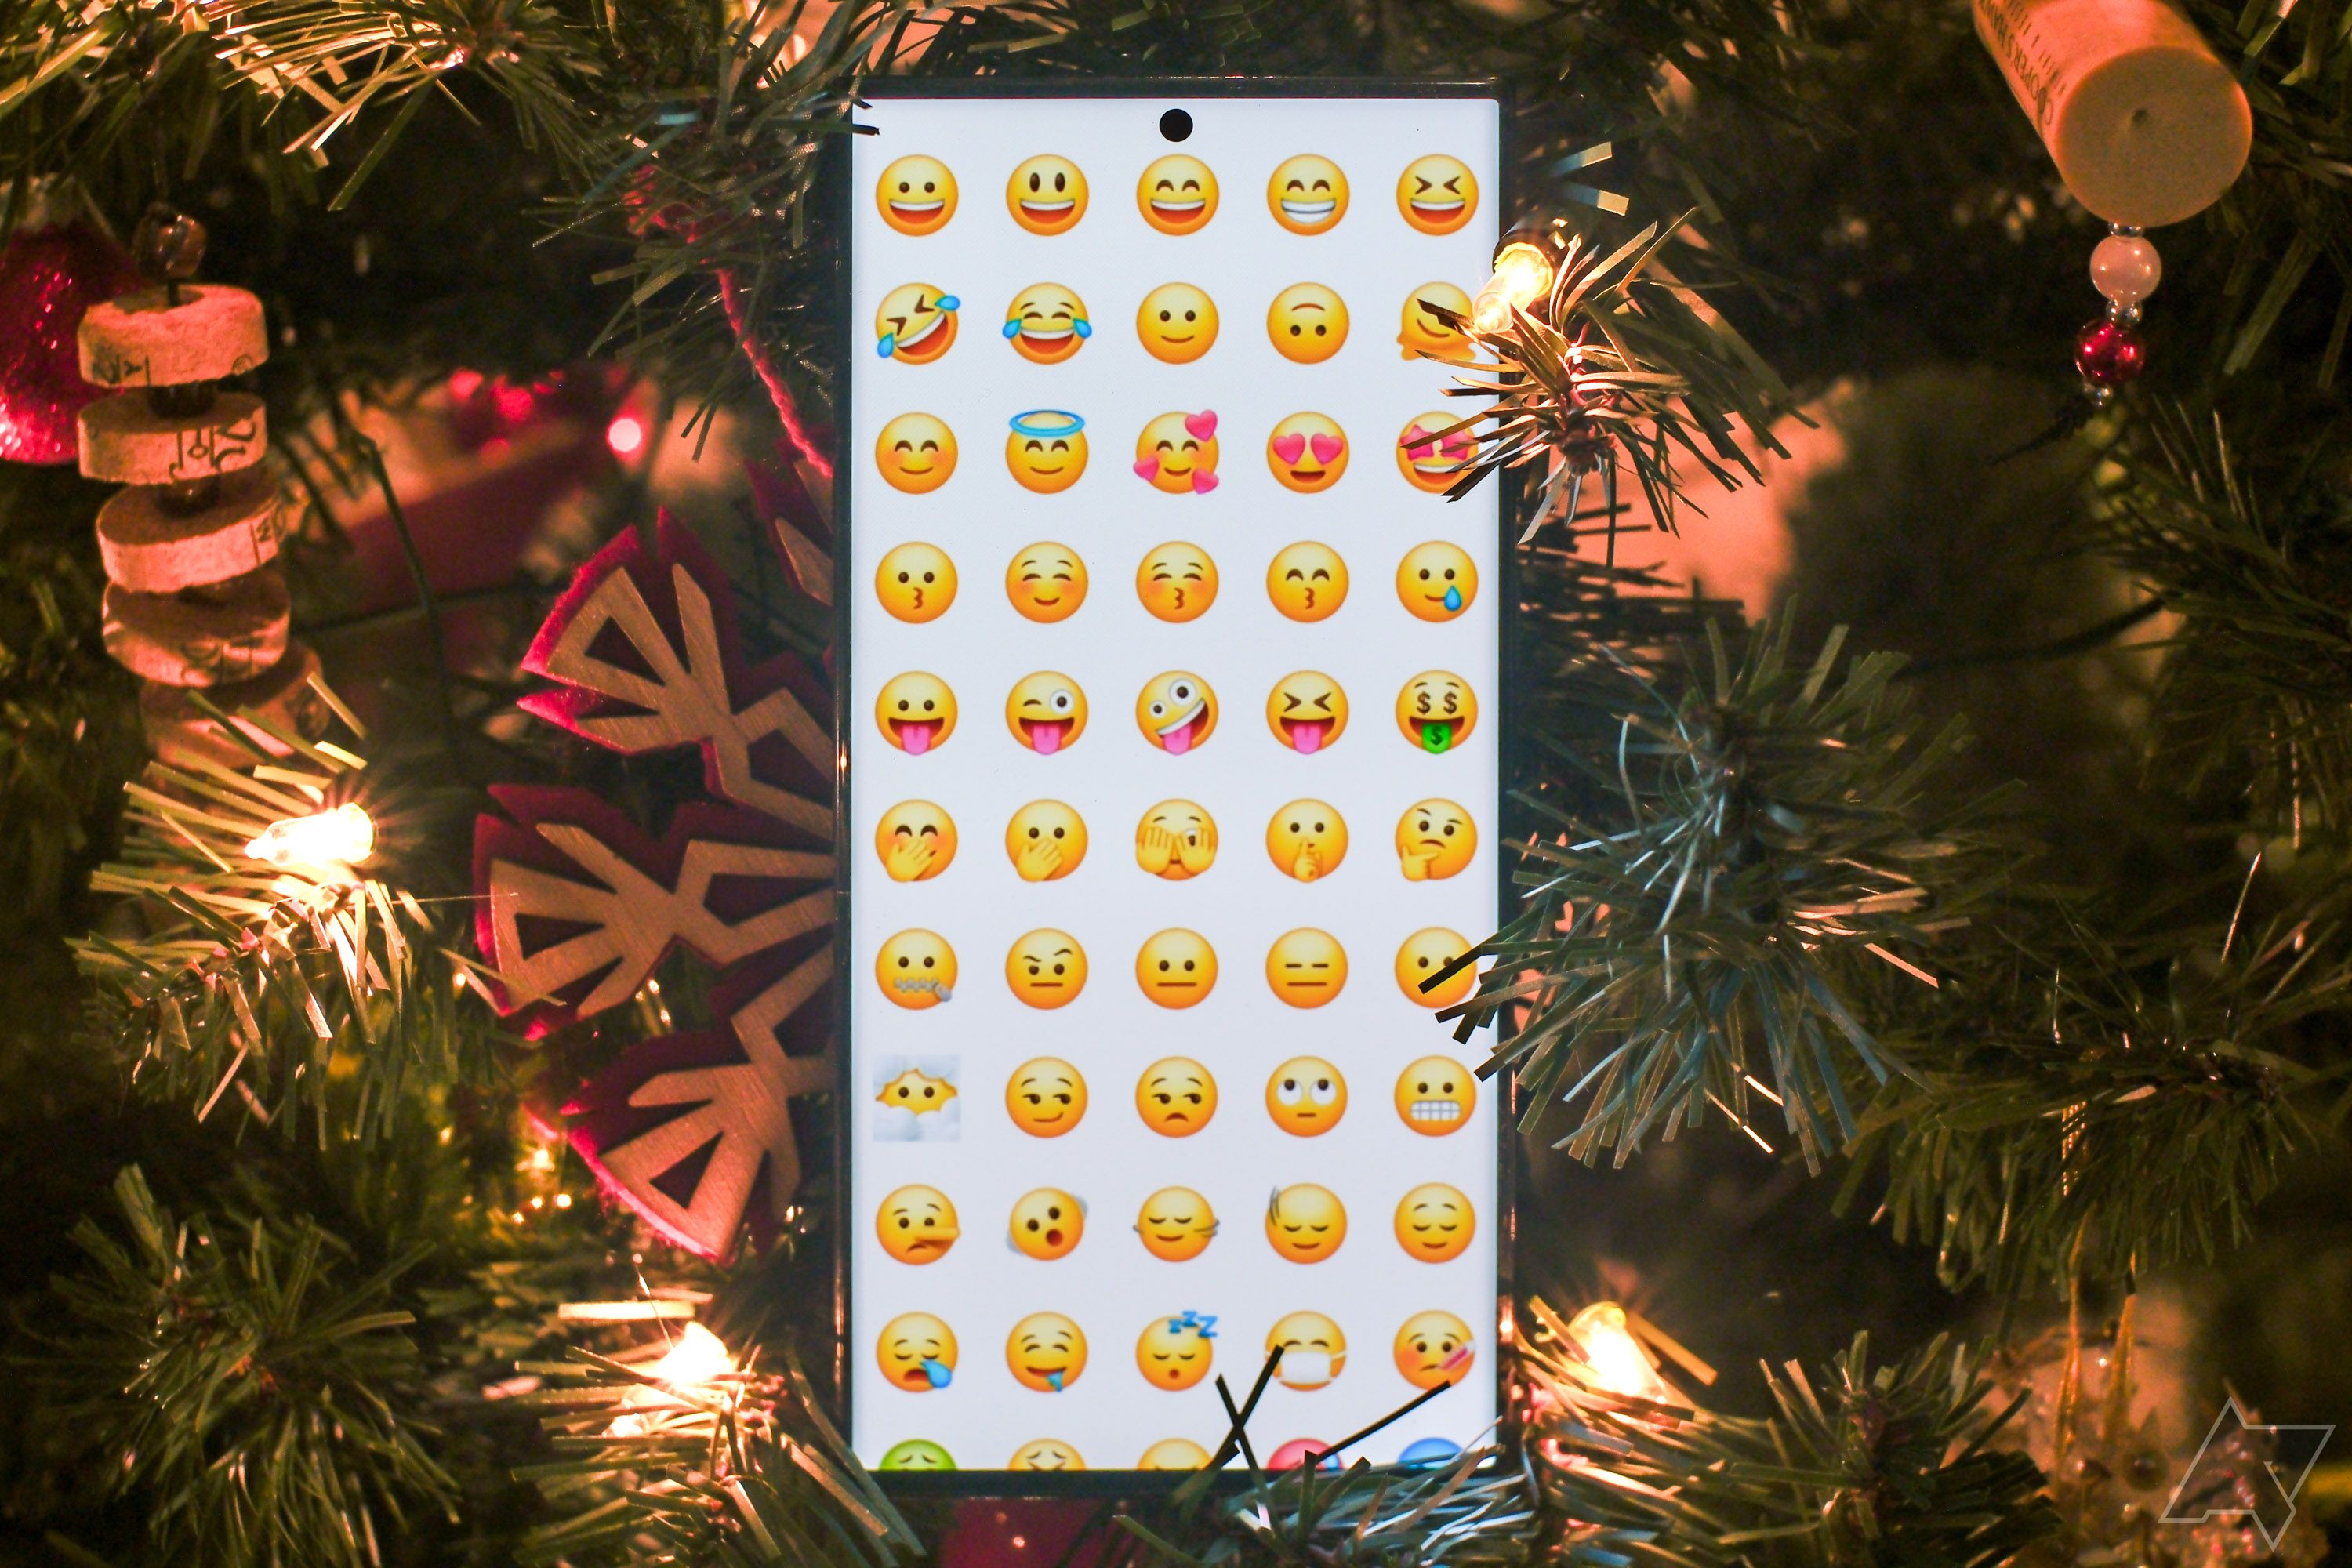 Um smartphone mostrando uma grade de emojis cercados por decorações natalinas